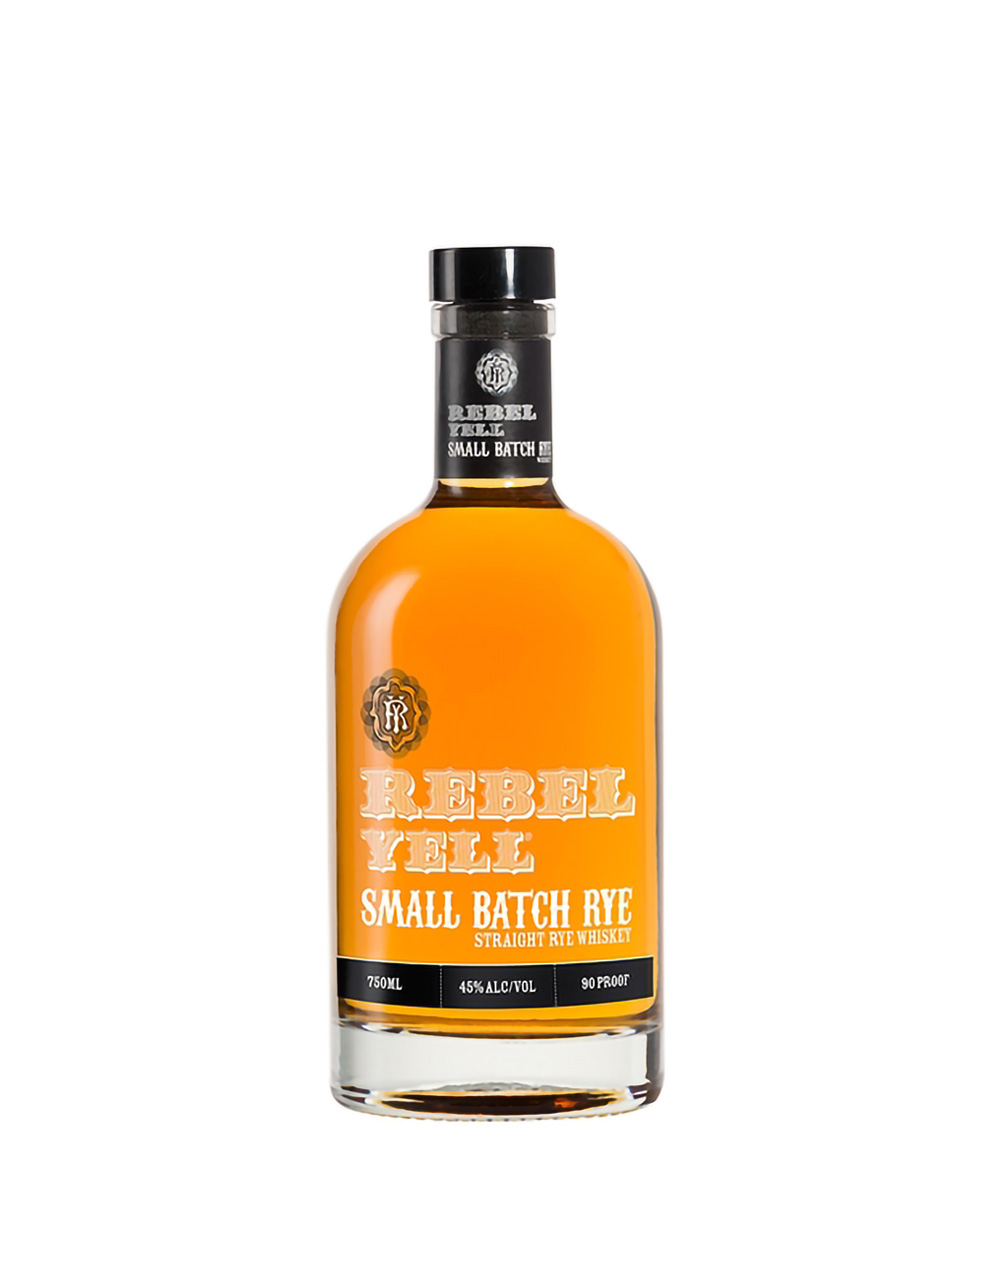 Highland Park 1986 Single Malt Scotch Whisky (Scott's Selection)